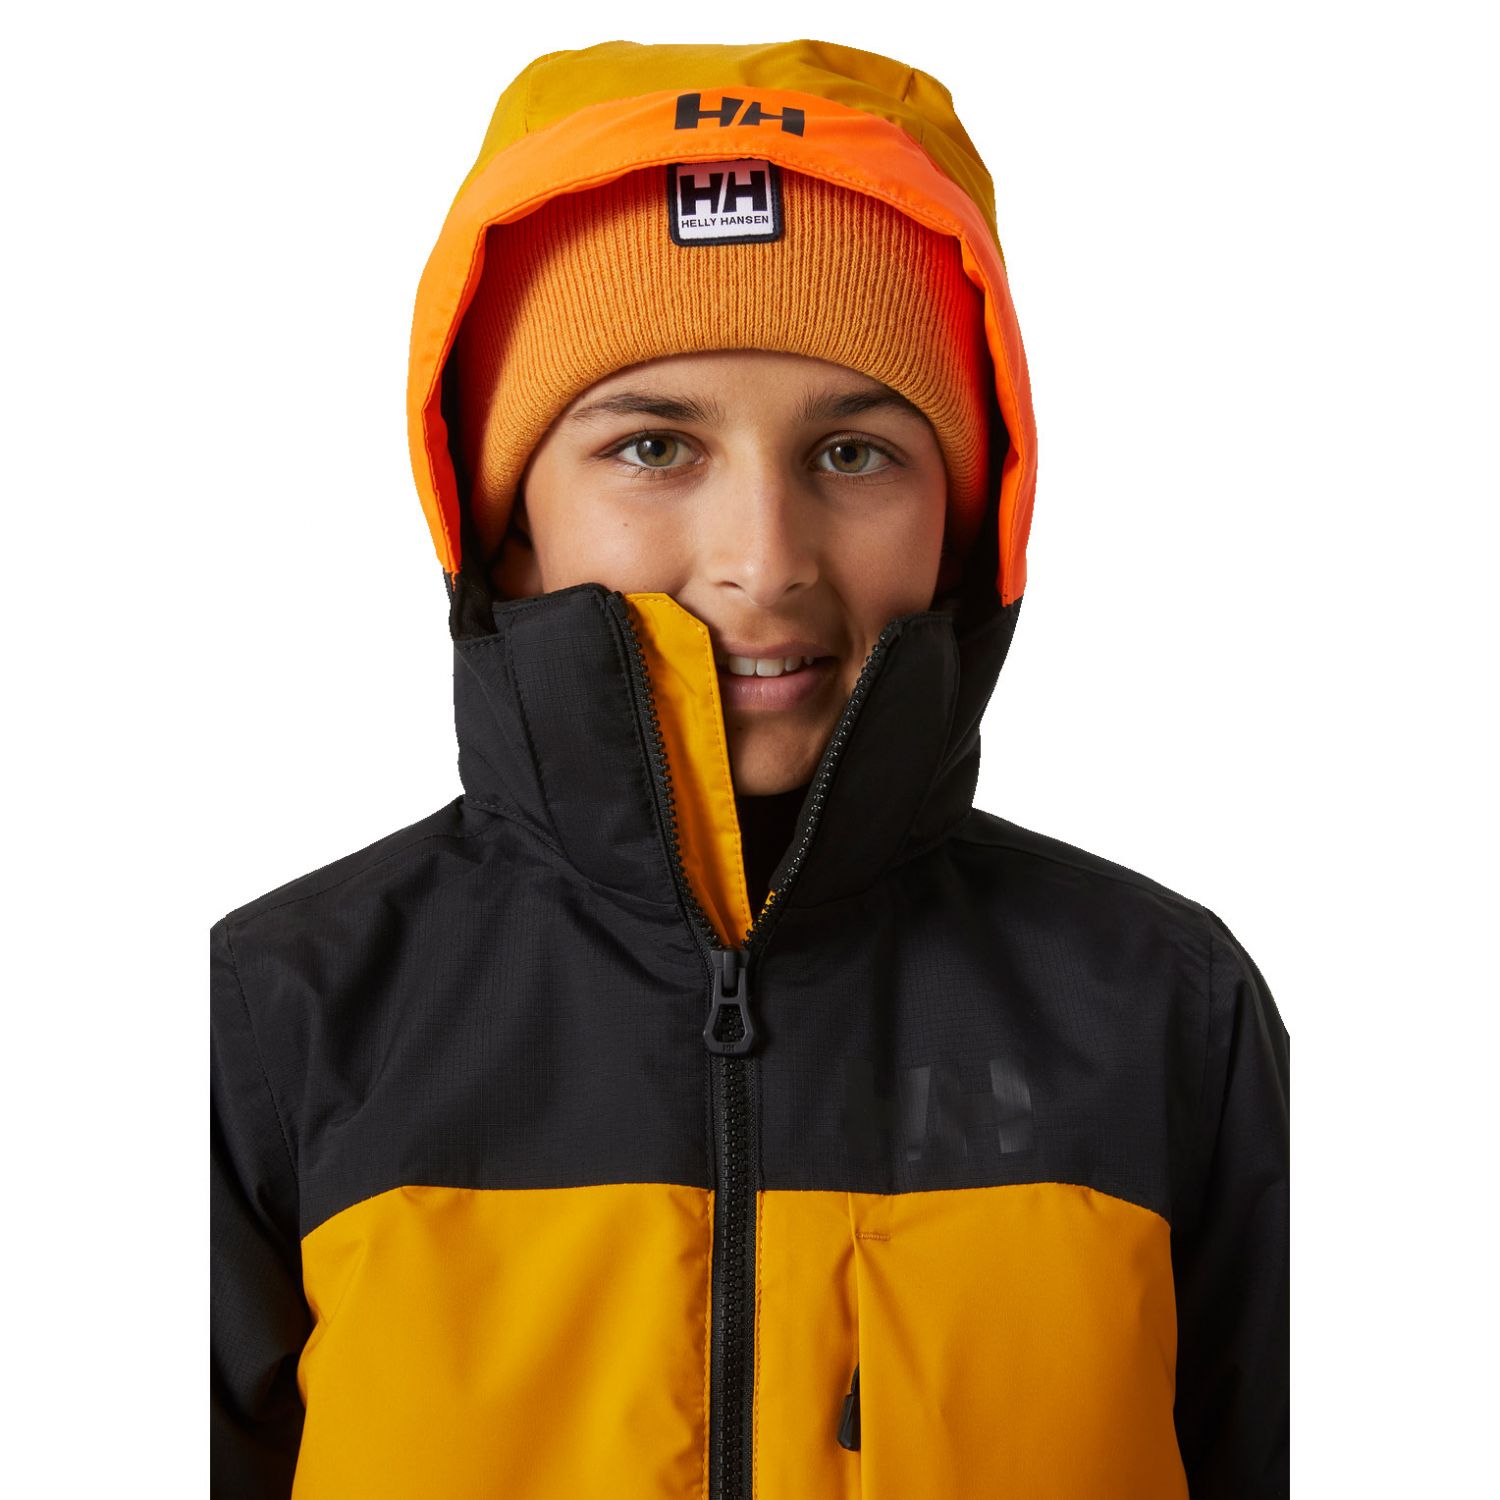 Helly Hansen JR Summit, ski jacket, junior, cloudberry